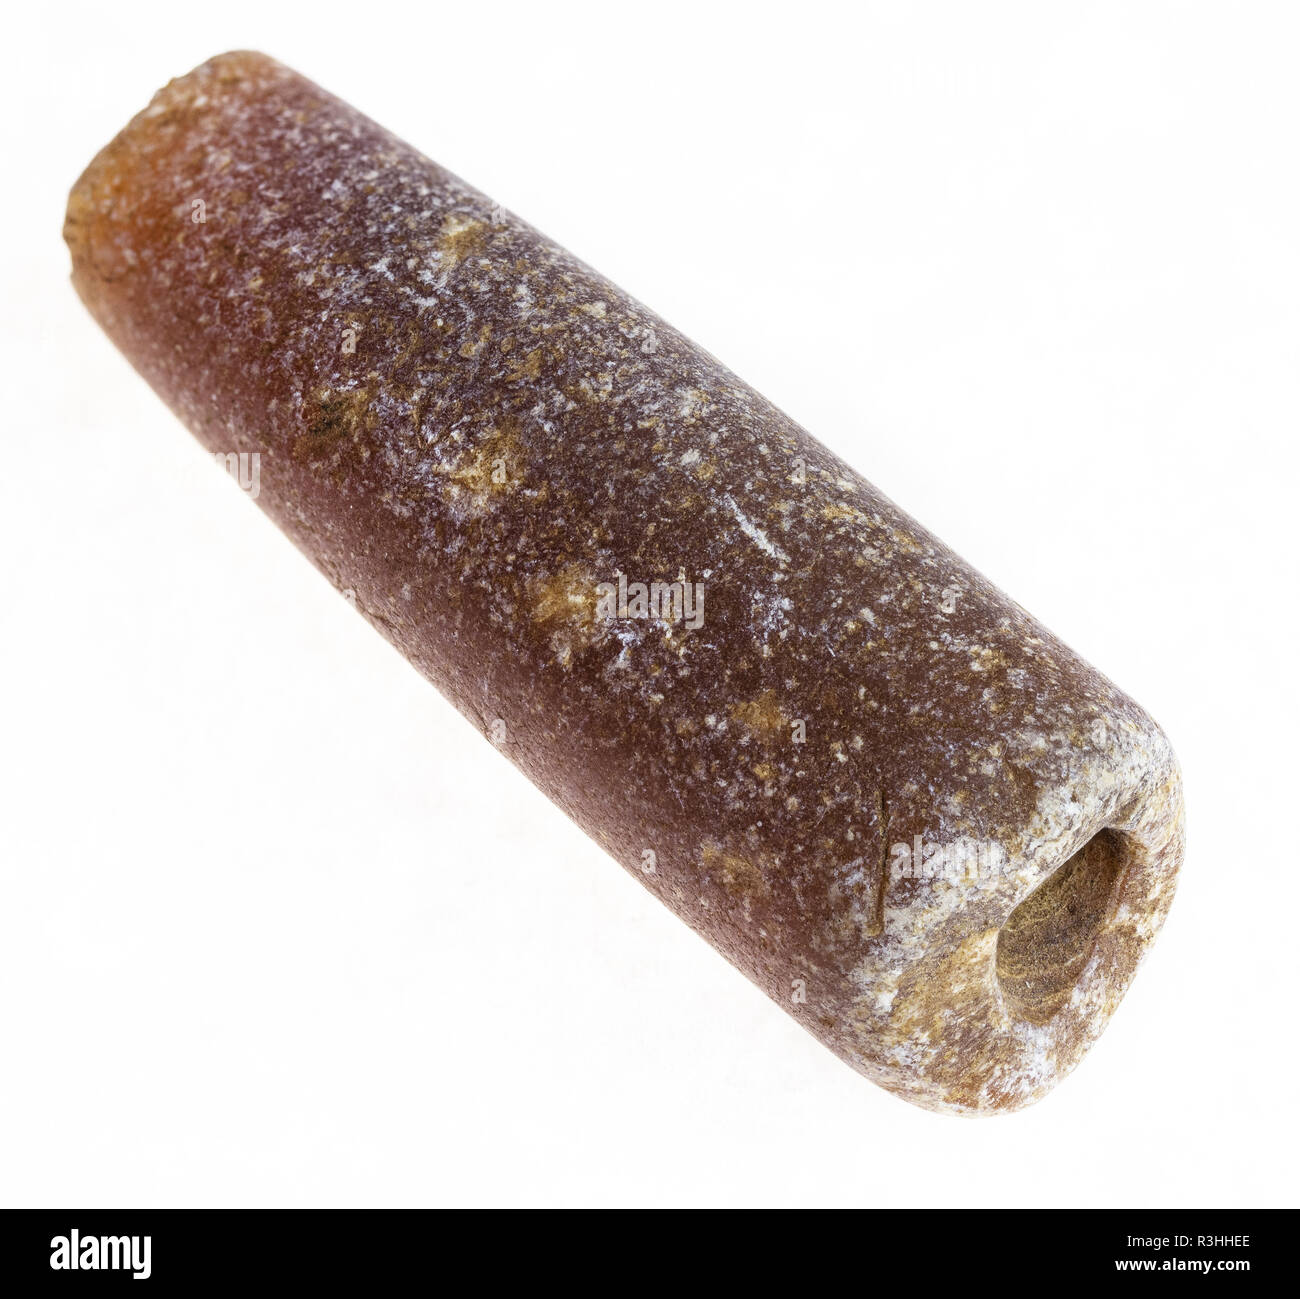 La macro photographie de minéraux naturels à partir de la collection géologique - belemnoid rostre thunderstone sur fond blanc Banque D'Images